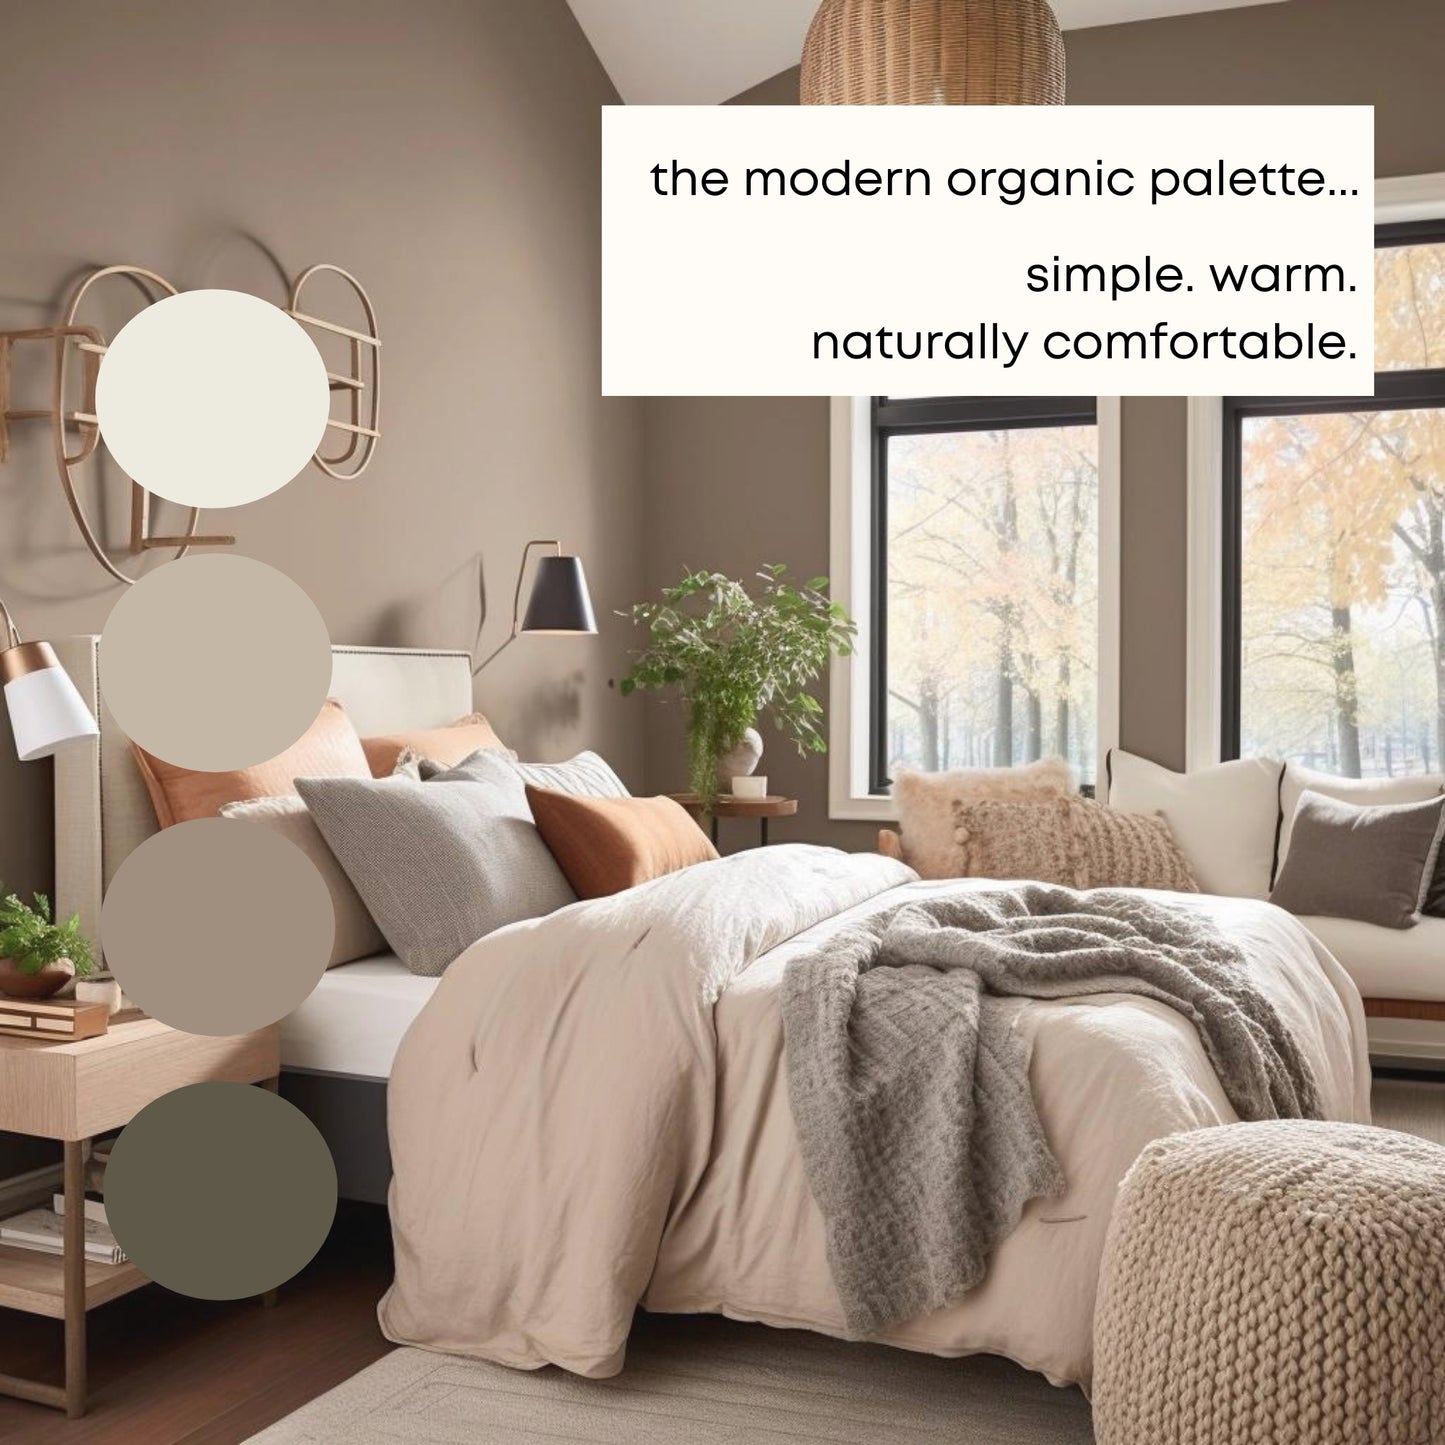 Modern Organic Sherwin Williams Paint Palette, Warm Neutrals, Warm White Interior Paint Colors, Boho Color Palette, Loggia